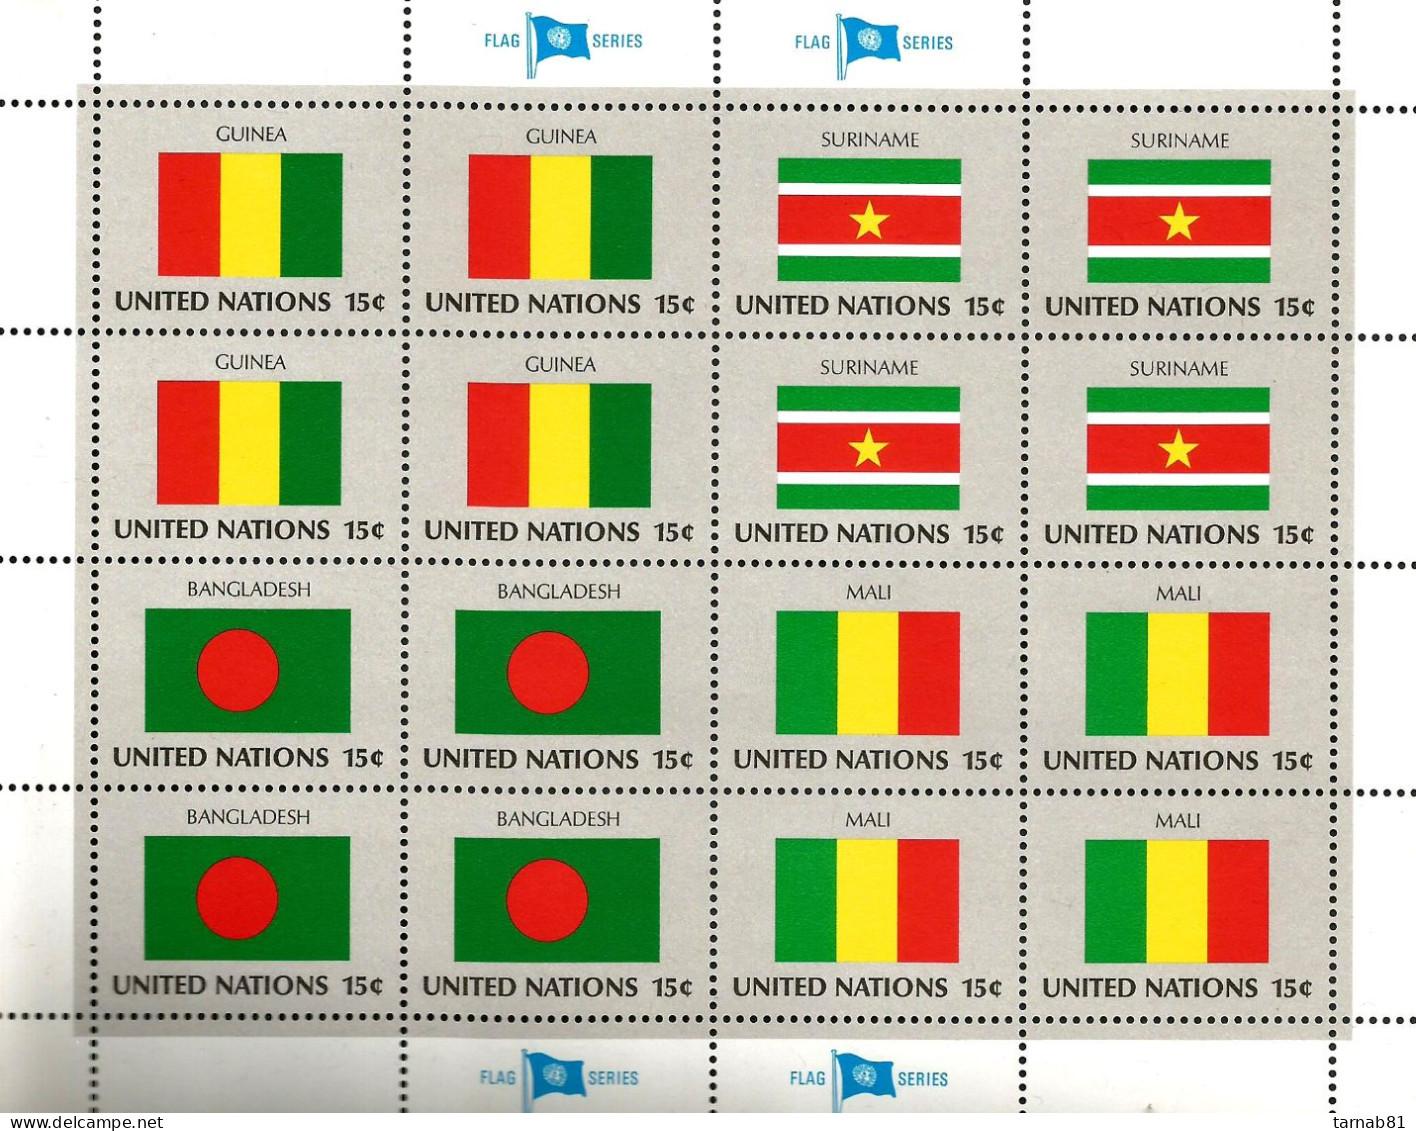 Flaggen Flags Drapeaux ONU Feuillets1980 à 1989  Nations Unies Bureau De New York Neufs ** - Unused Stamps